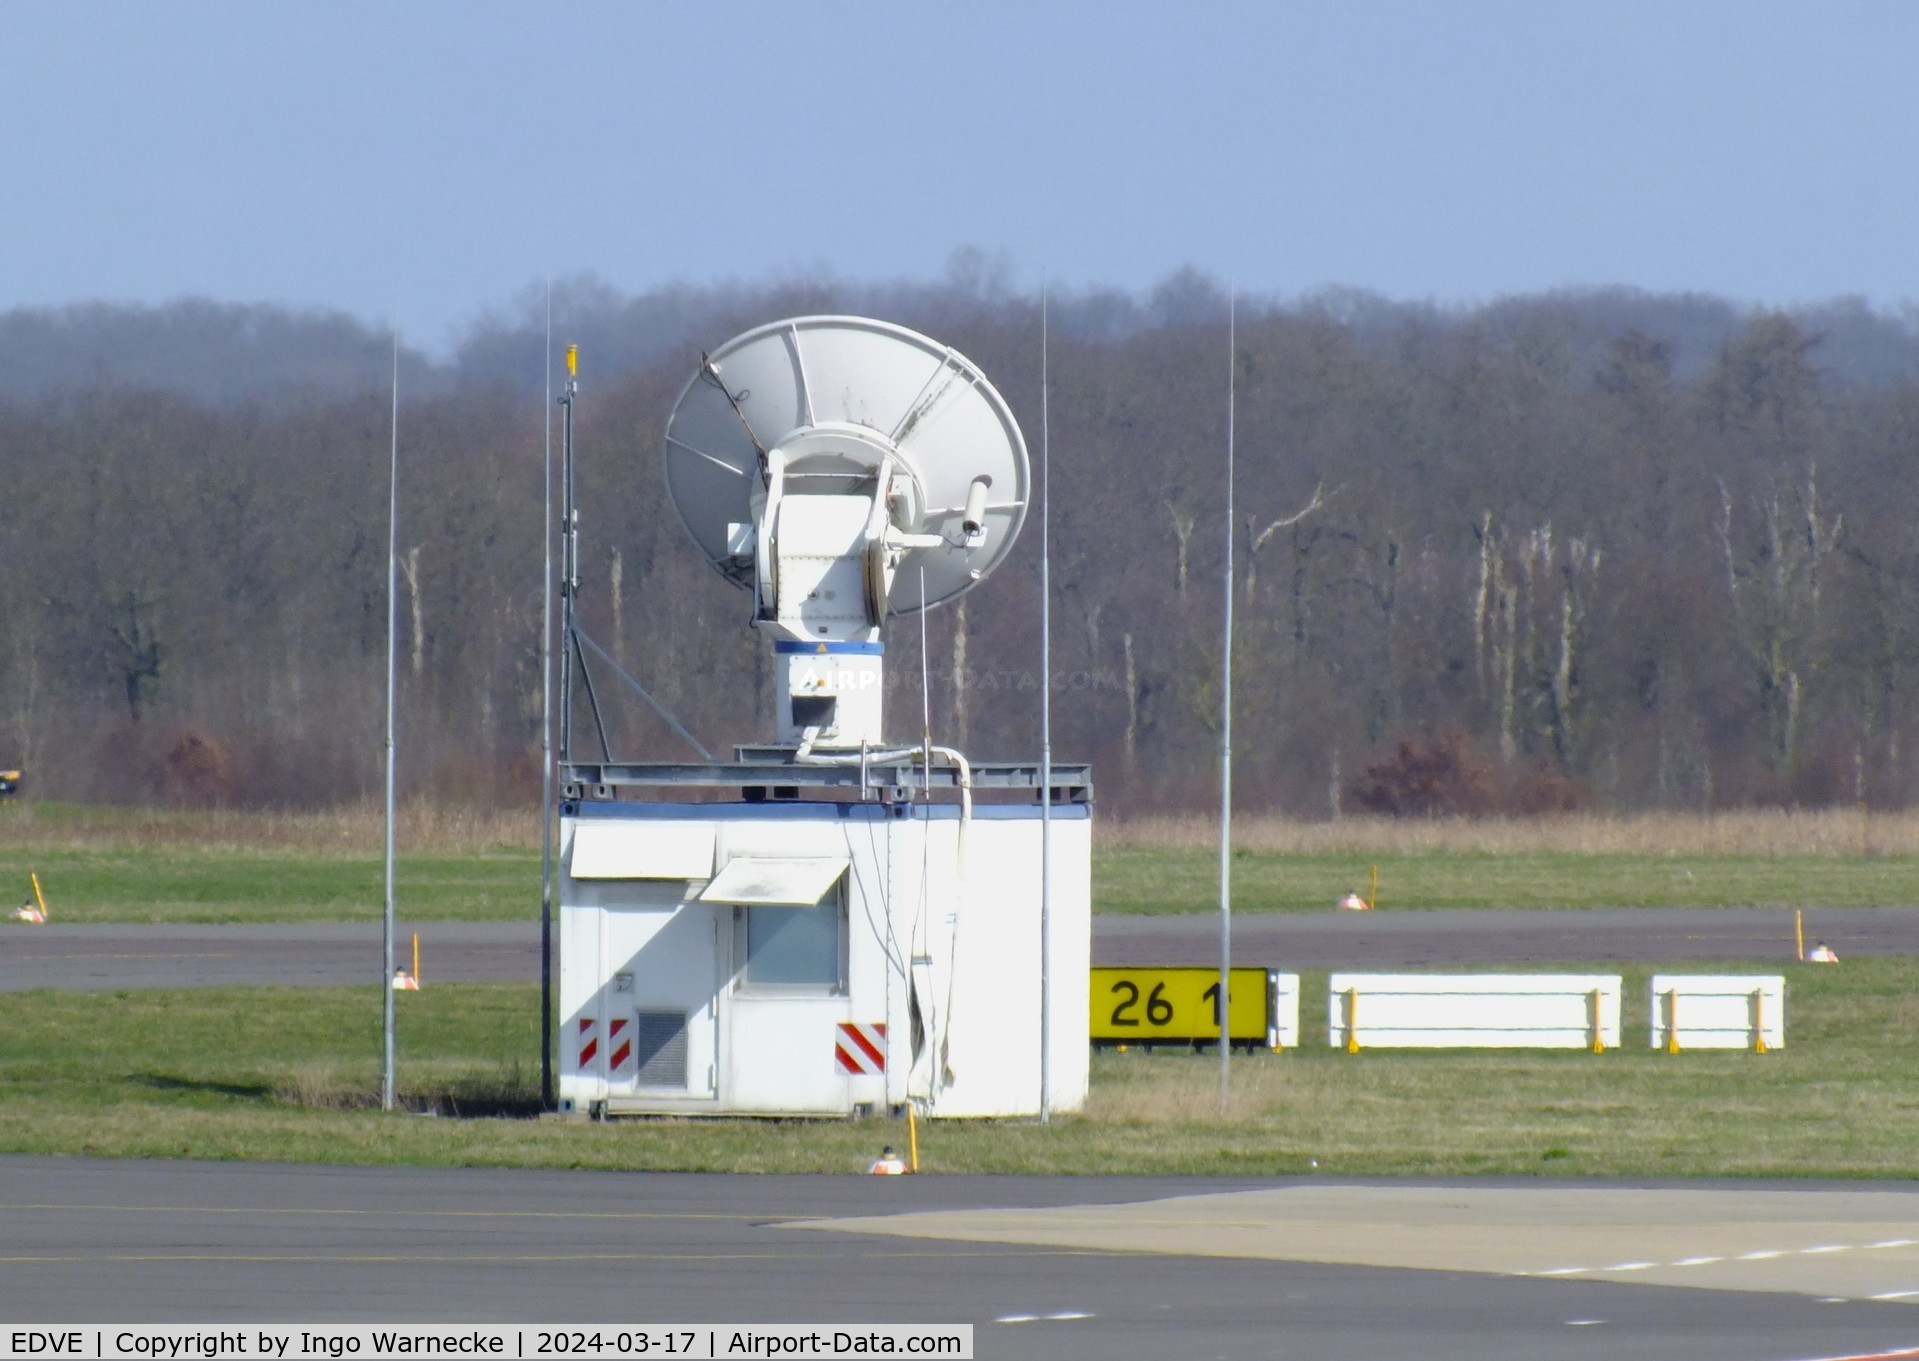 Braunschweig-Wolfsburg Regional Airport, Braunschweig, Lower Saxony Germany (EDVE) - new satcom station?/radar? at eastern apron of Braunschweig/Wolfsburg airport, BS/Waggum